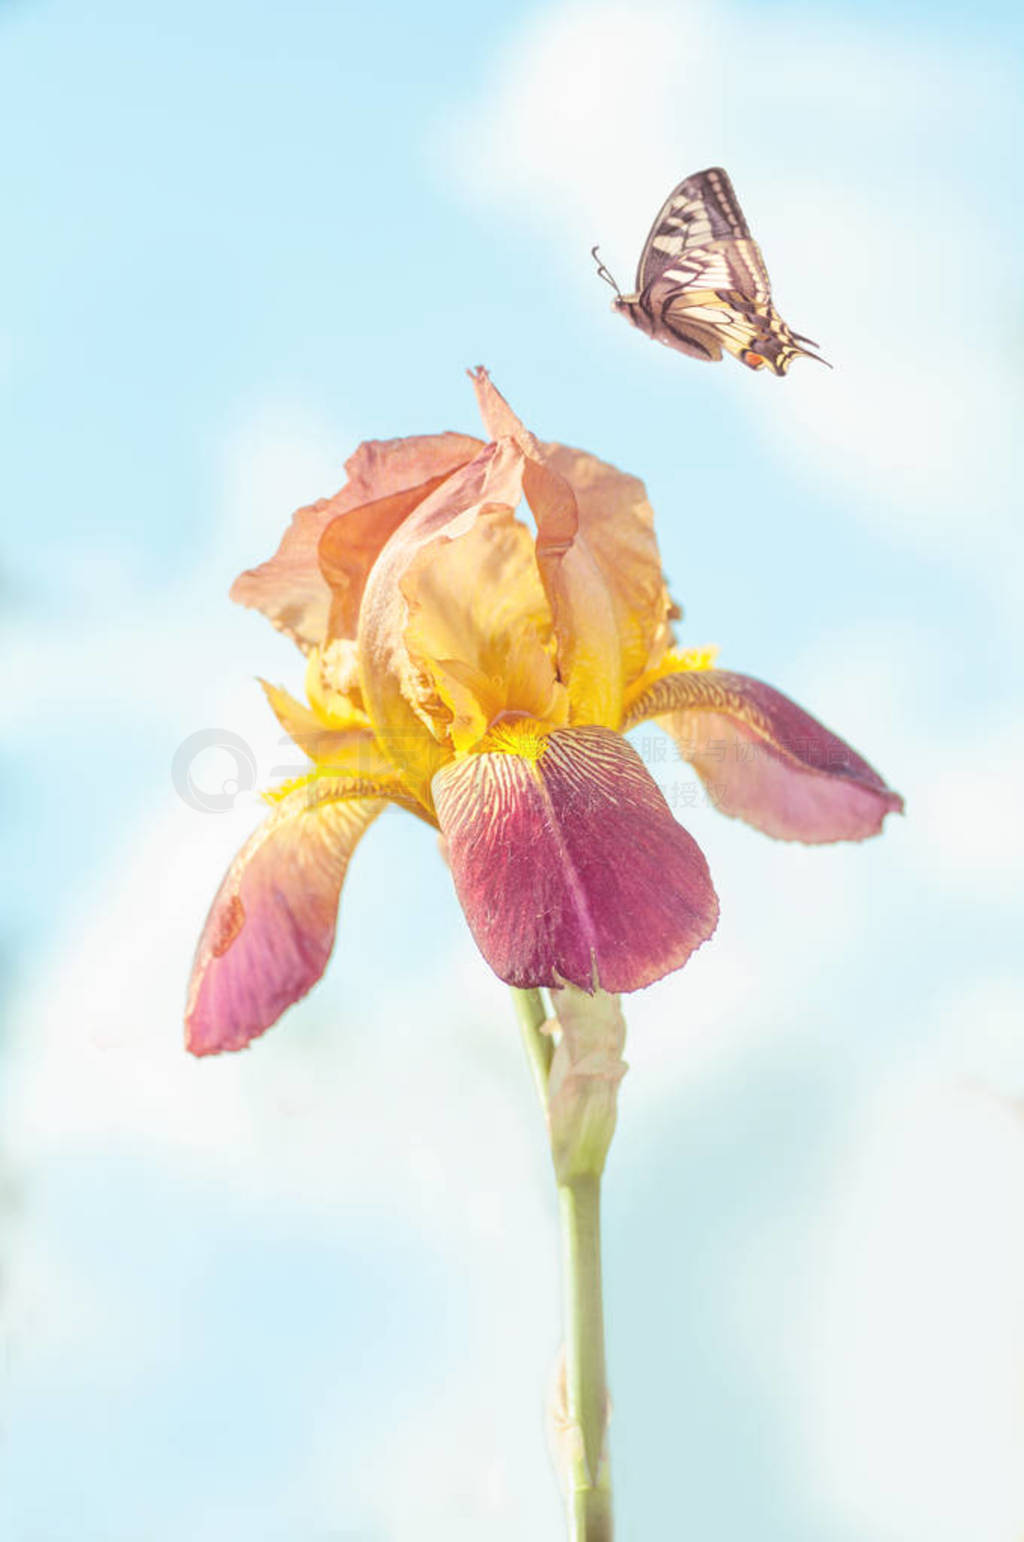 butterfly flies on an iris flower, close-up, a flower against a